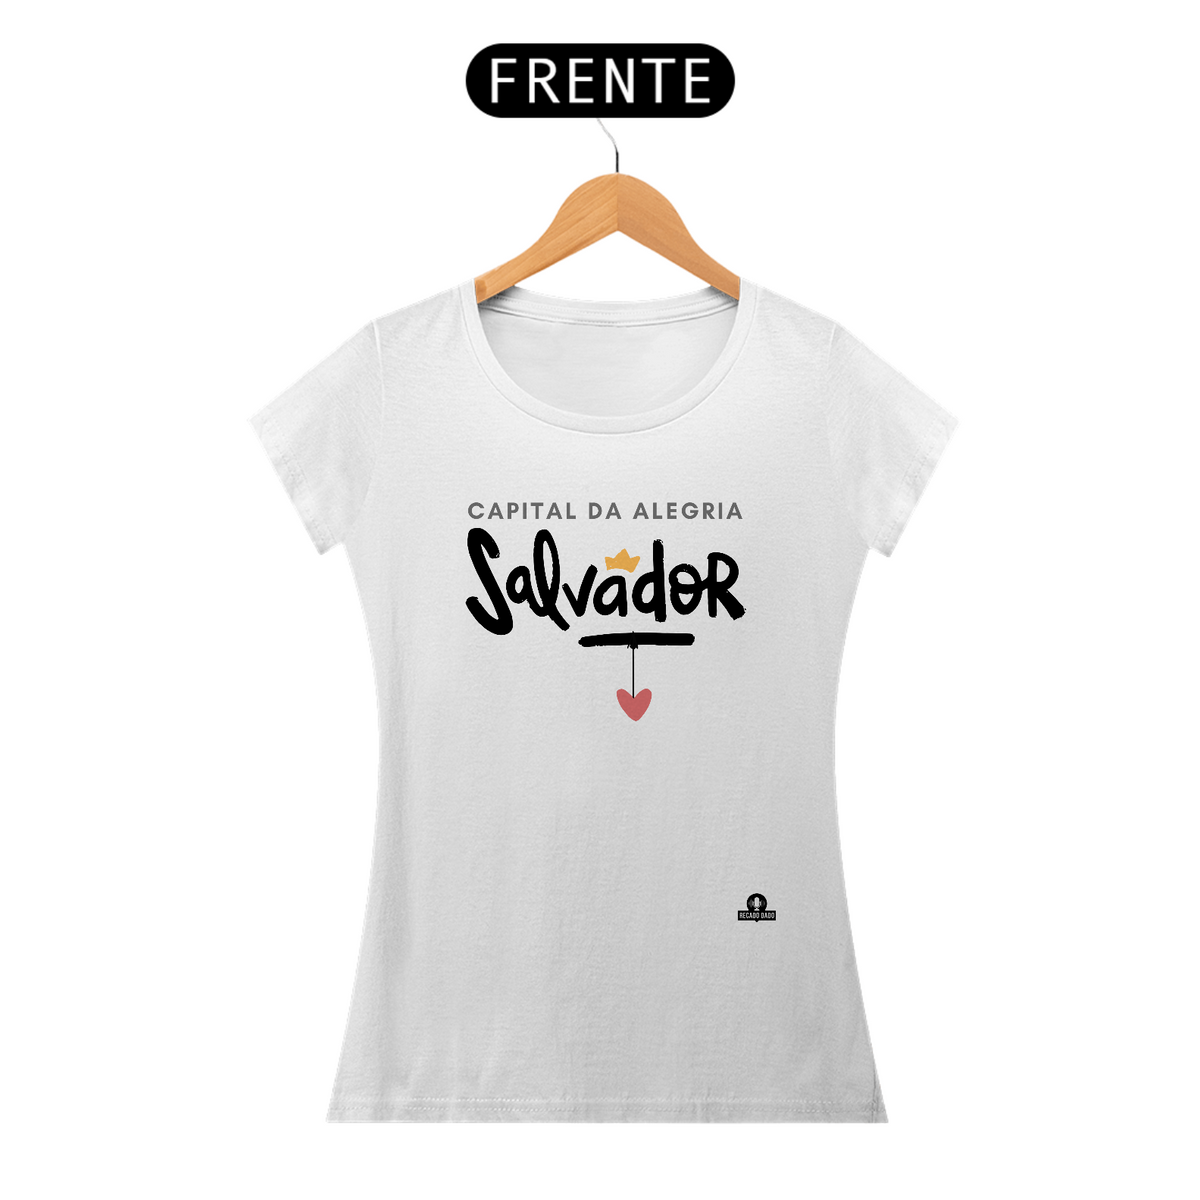 Nome do produto: Camiseta baby long de turismo de Salvador, capital do lindo estado da Bahia, capital da alegria.